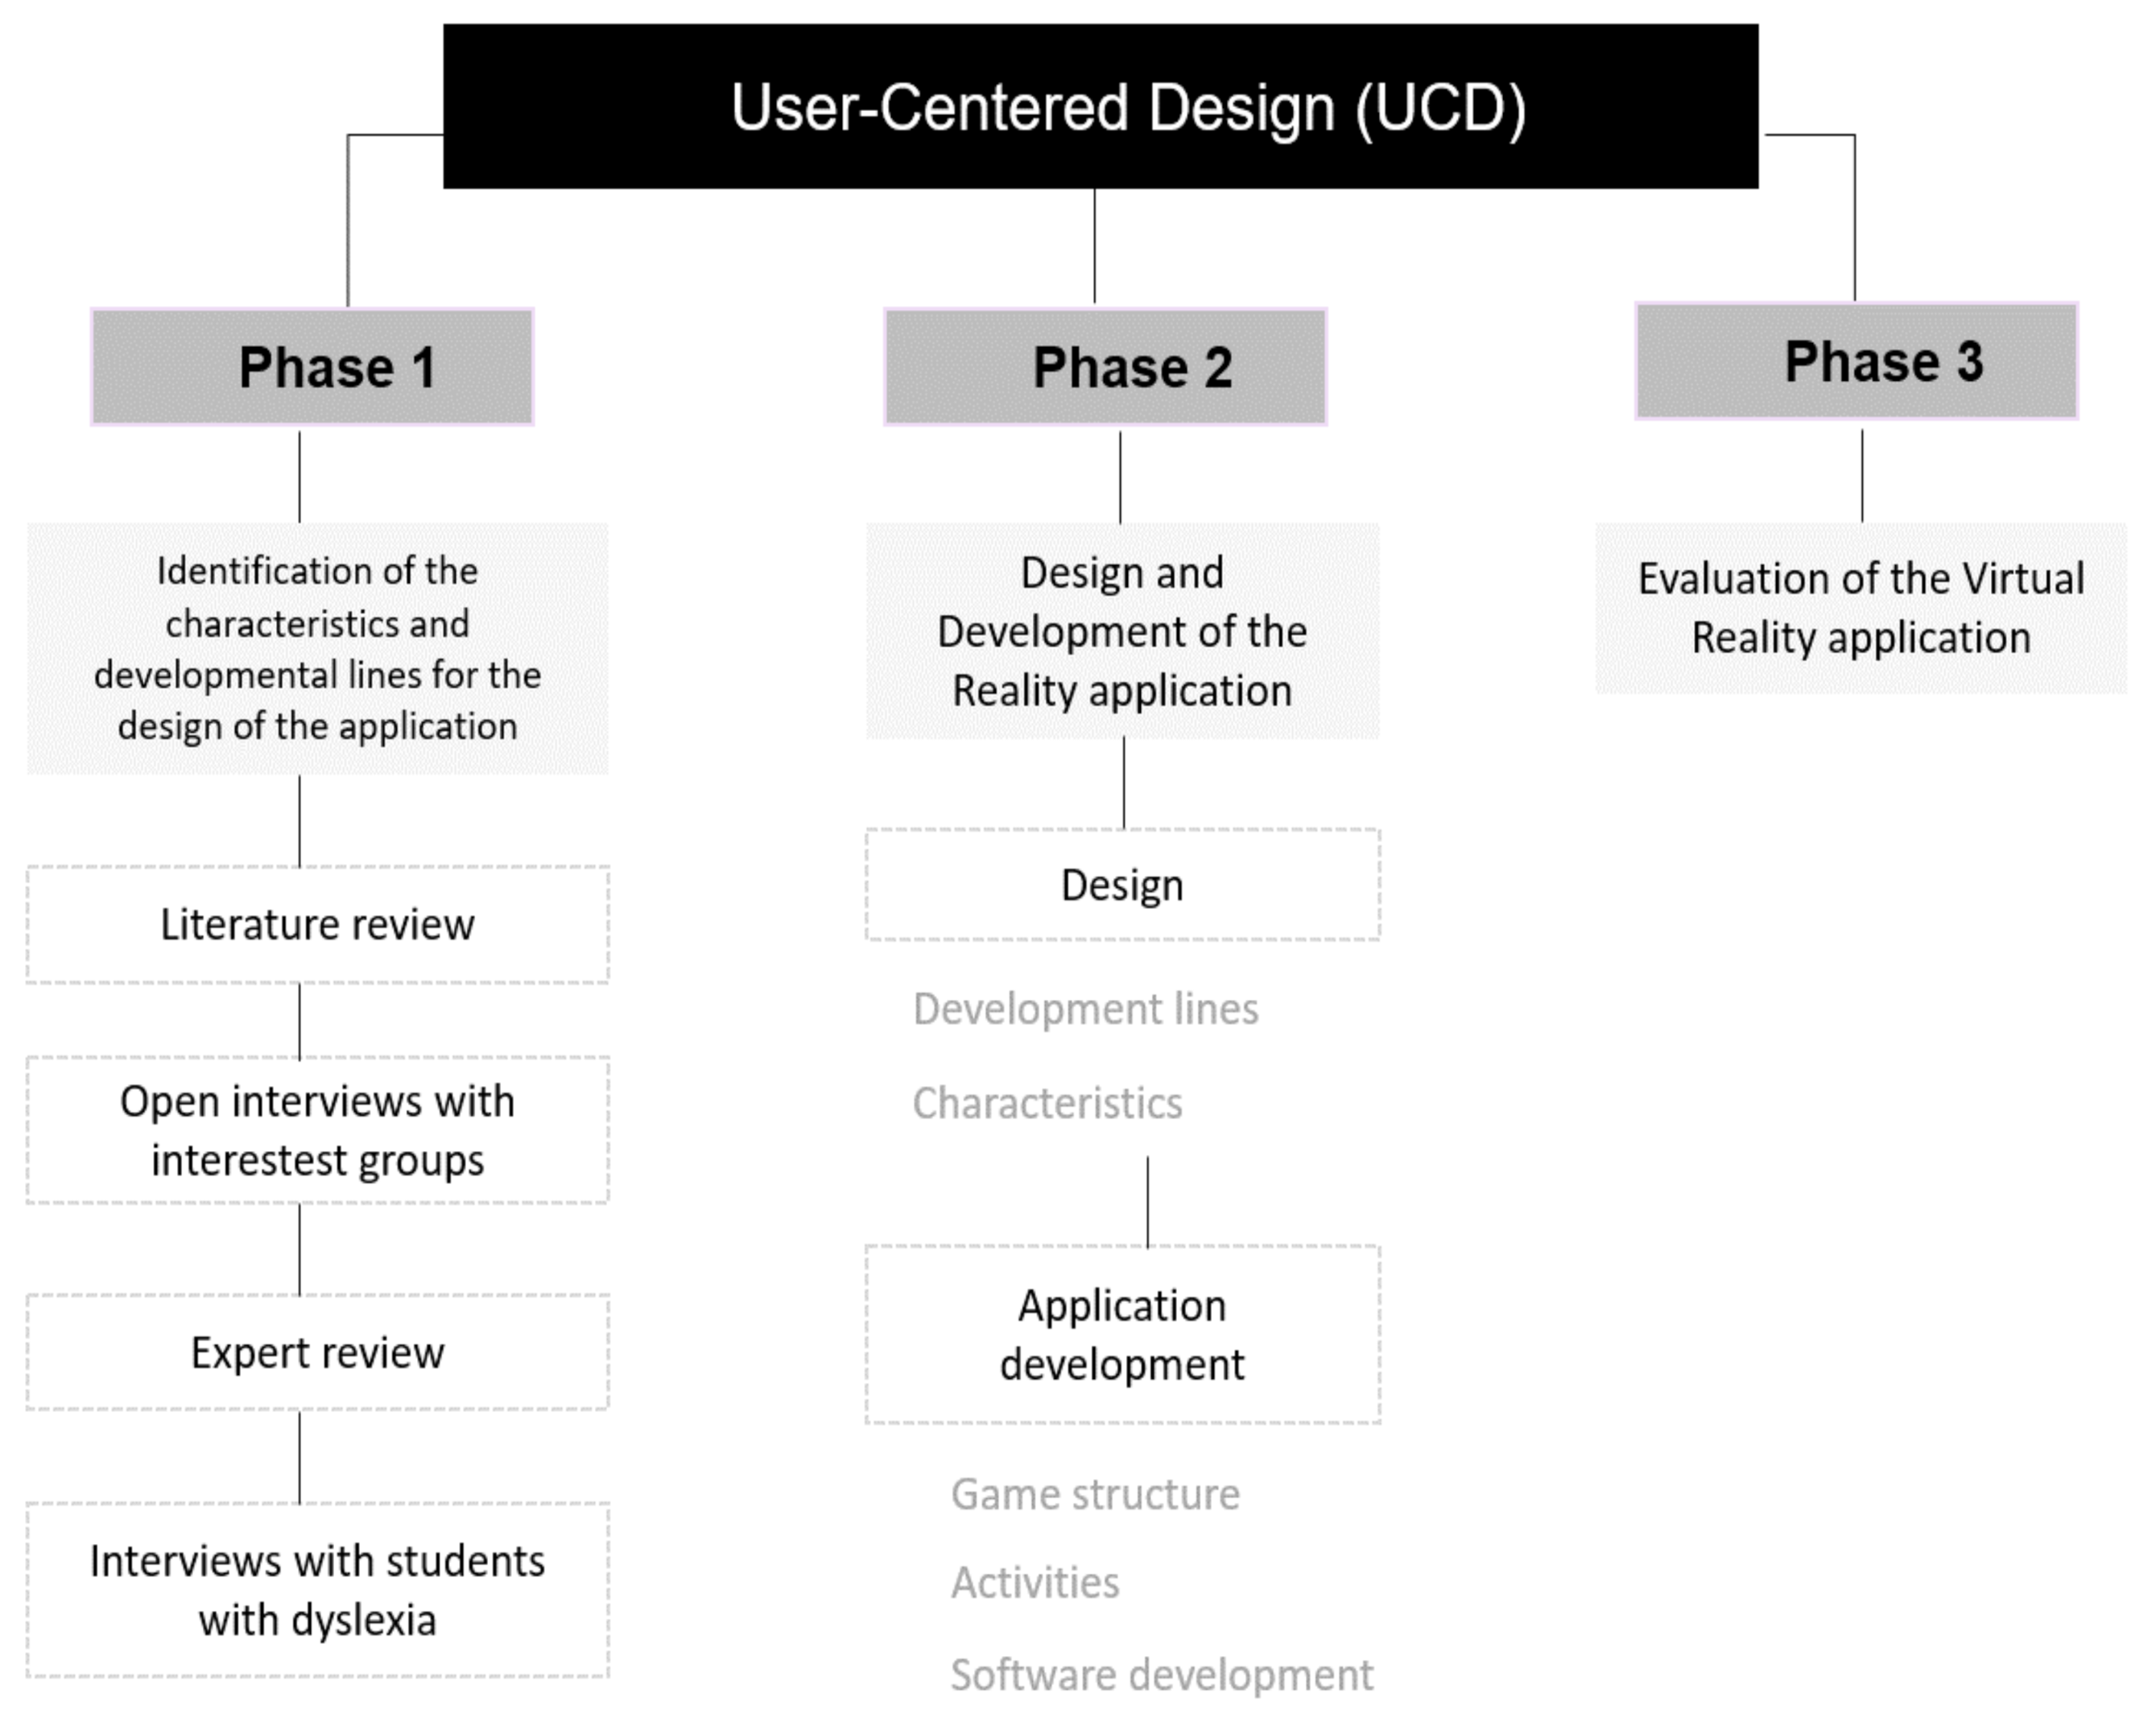 PDF) Tese Level Design Goncalves D